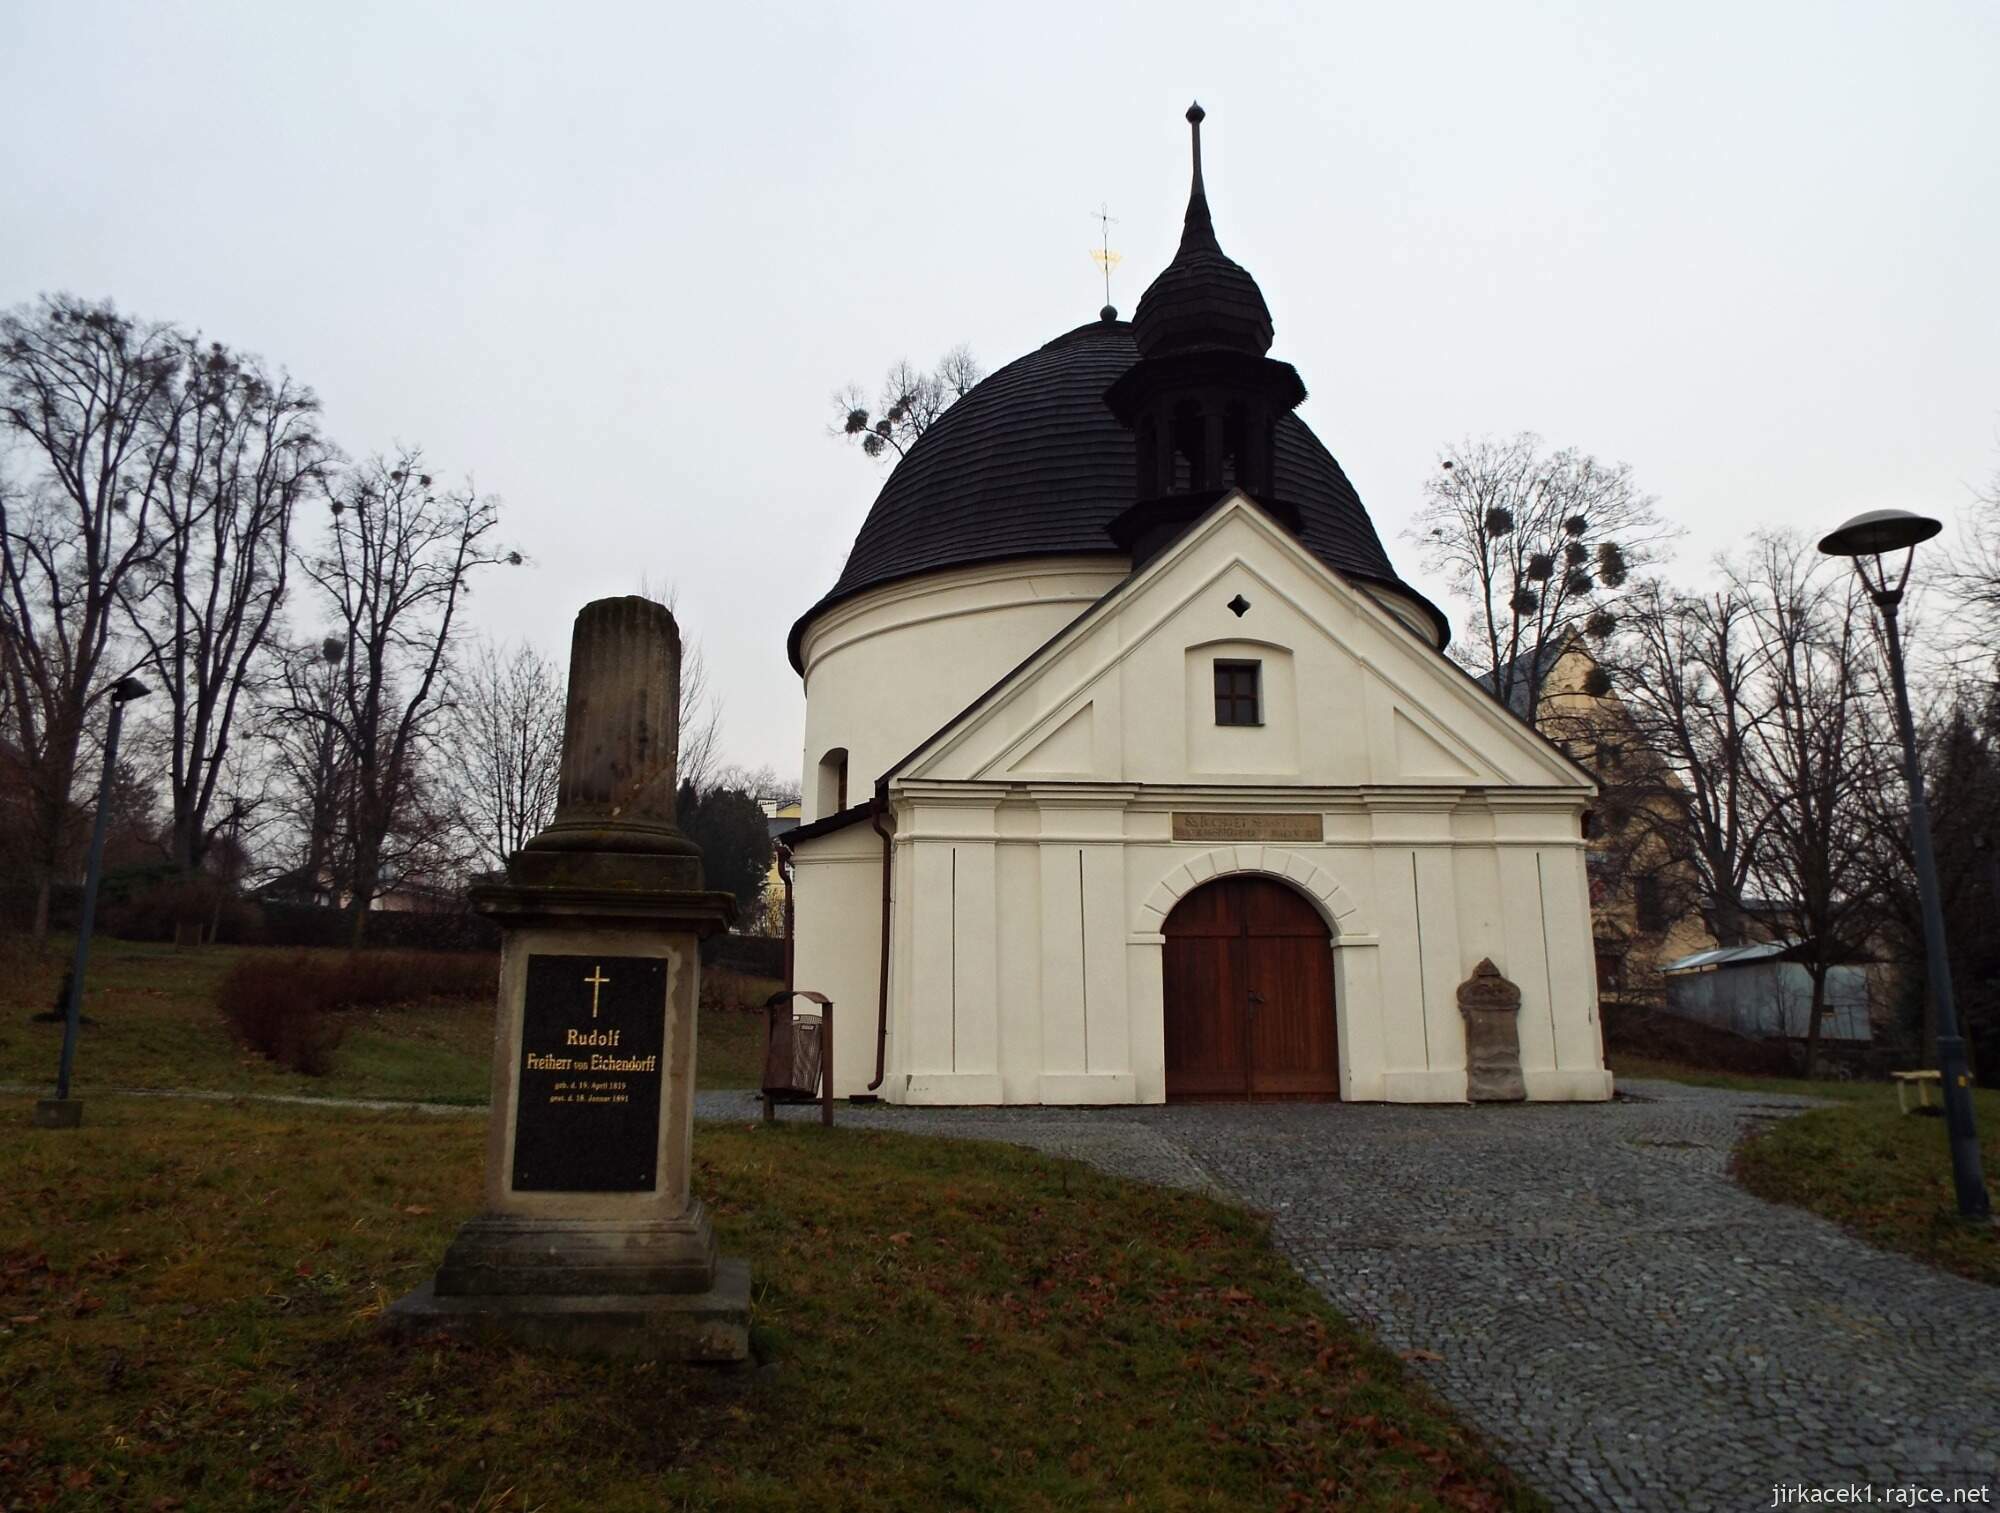 B - Fulnek - kaple sv. Rocha a Šebestiána 06 - čelní pohled a náhrobek